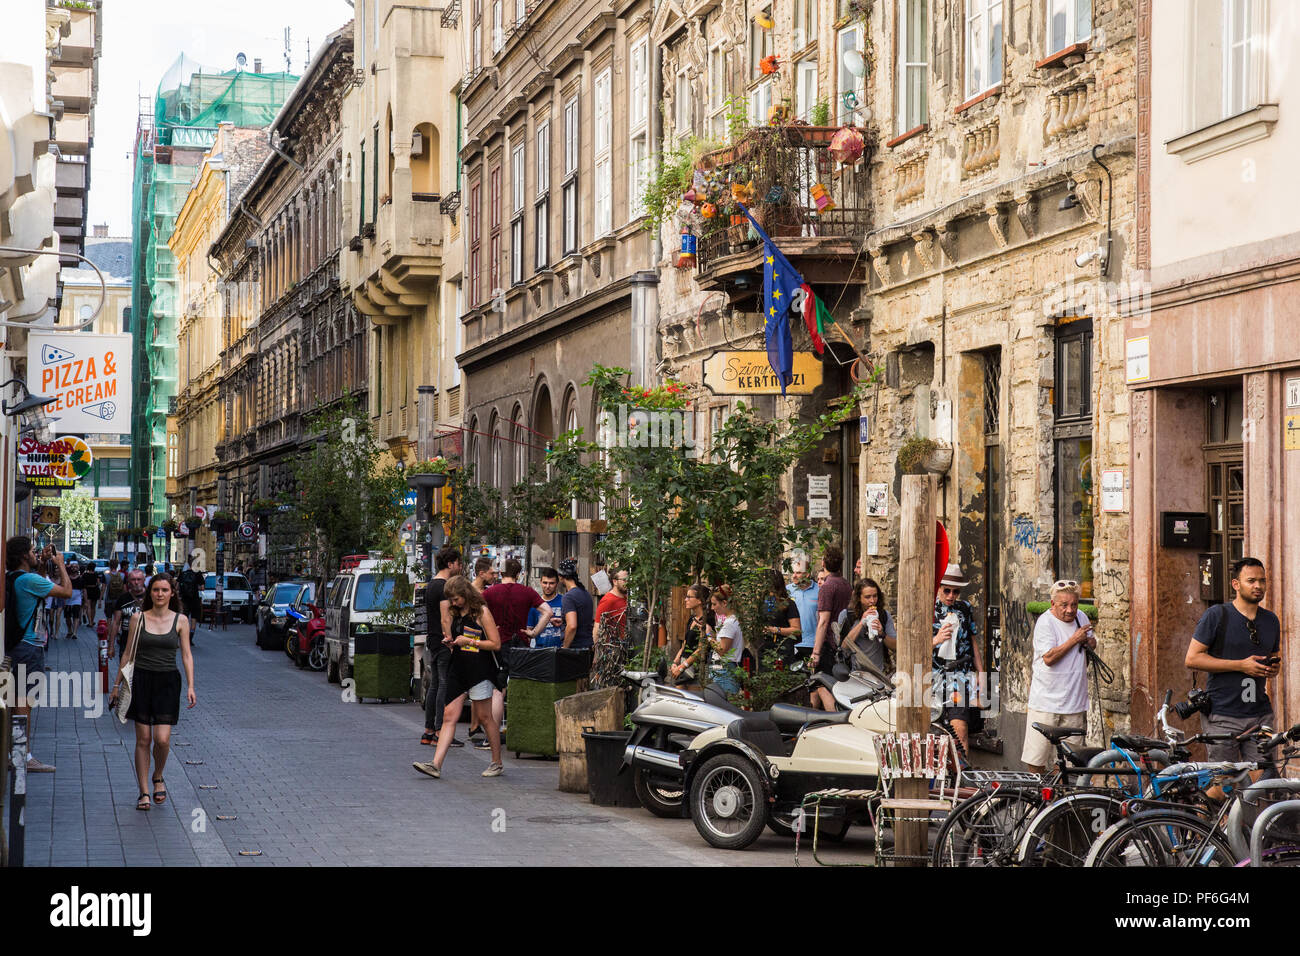 Budapest, Hongrie. 14 août, 2018. Les gens se sont rassemblés devant le Szimpla Kert dans rue Kazinczy, le plus connu de nombreux pubs 'ruine' dans le quartier juif qu Banque D'Images